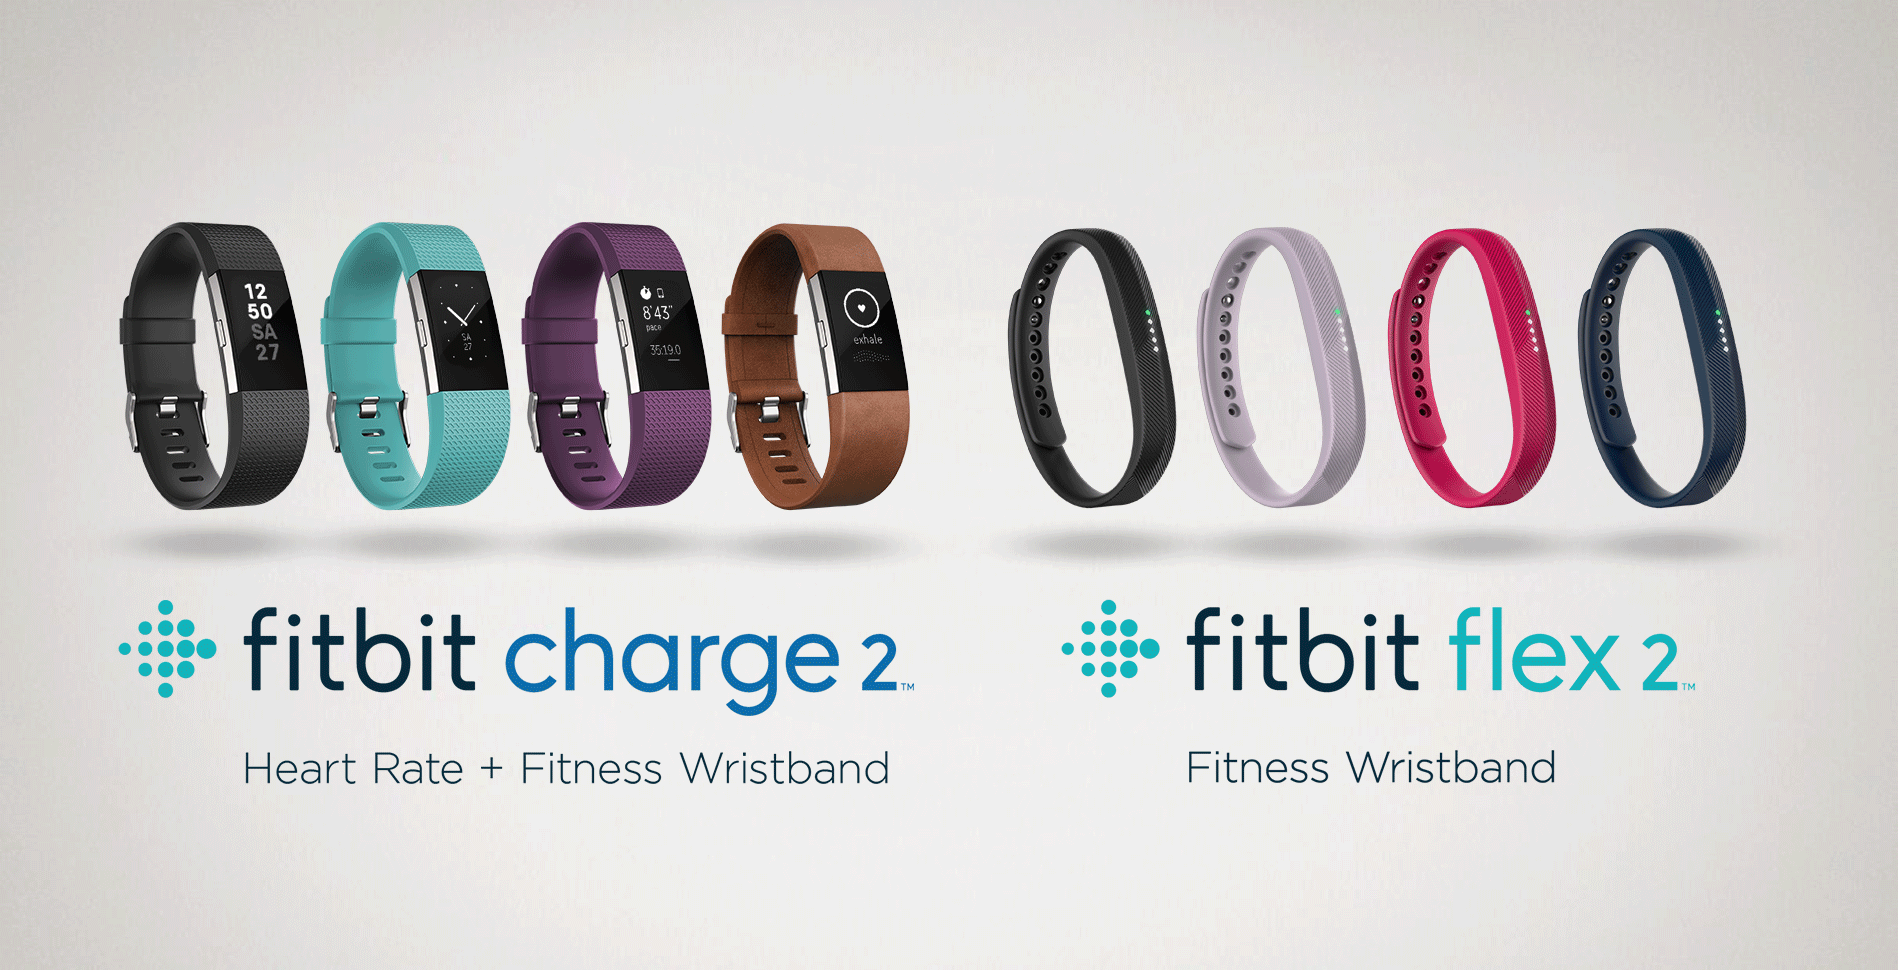 Fitbit Alta Lineup.jpeg